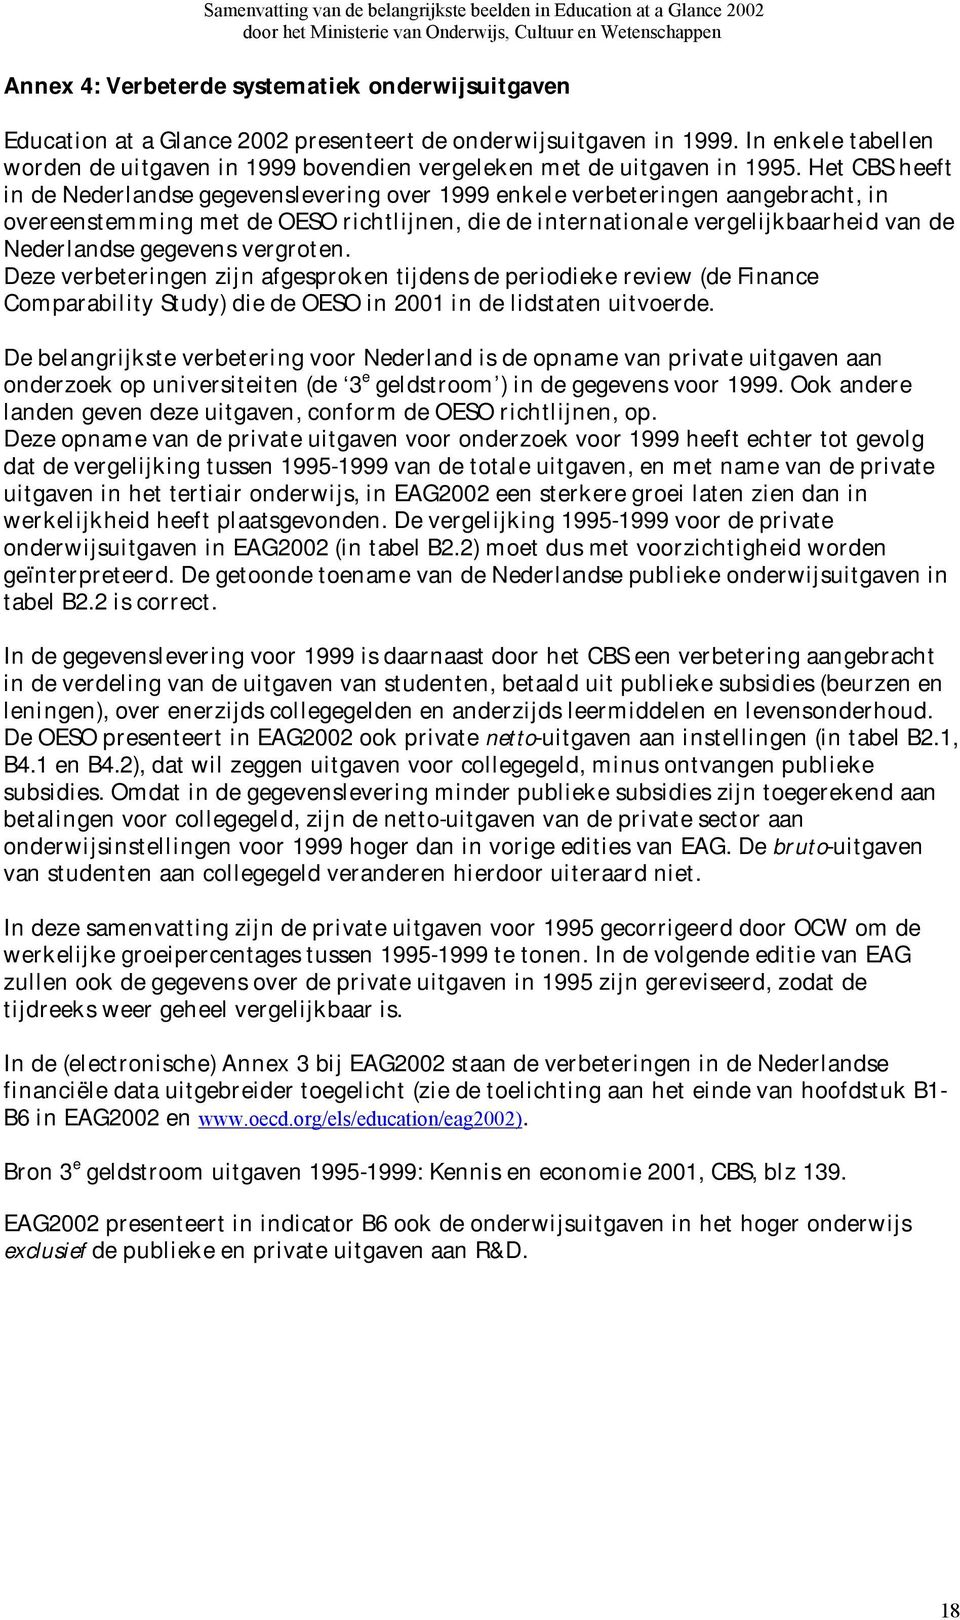 Het CBS heeft in de Nederlandse gegevenslevering over 1999 enkele verbeteringen aangebracht, in overeenstemming met de OESO richtlijnen, die de internationale vergelijkbaarheid van de Nederlandse